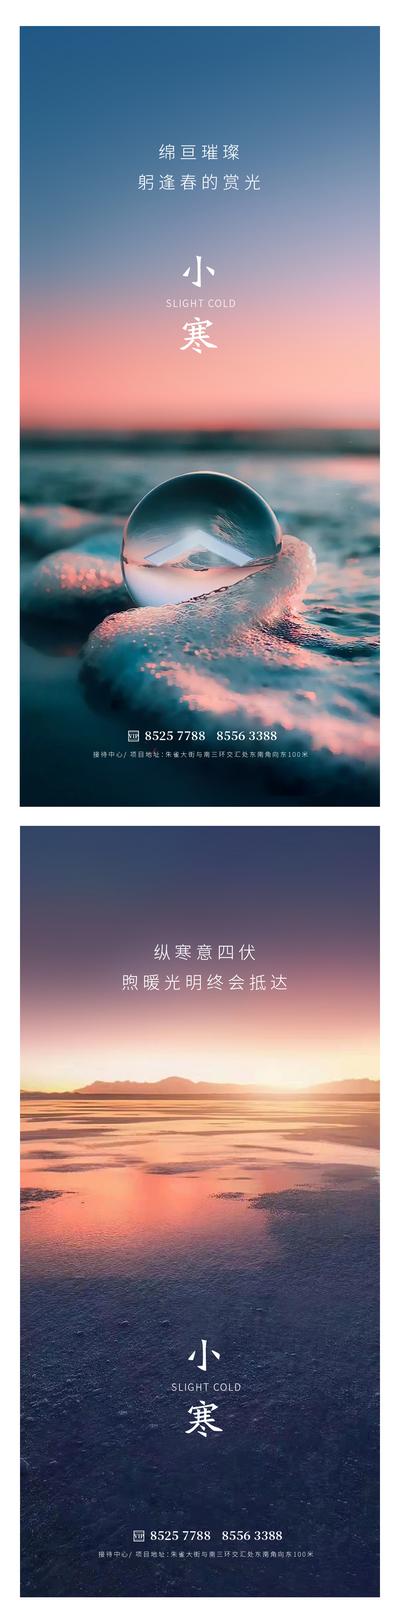 南门网 广告 海报 地产 小寒 节气 雪地 太阳 阳光 晚霞 水晶 早晨 湖面